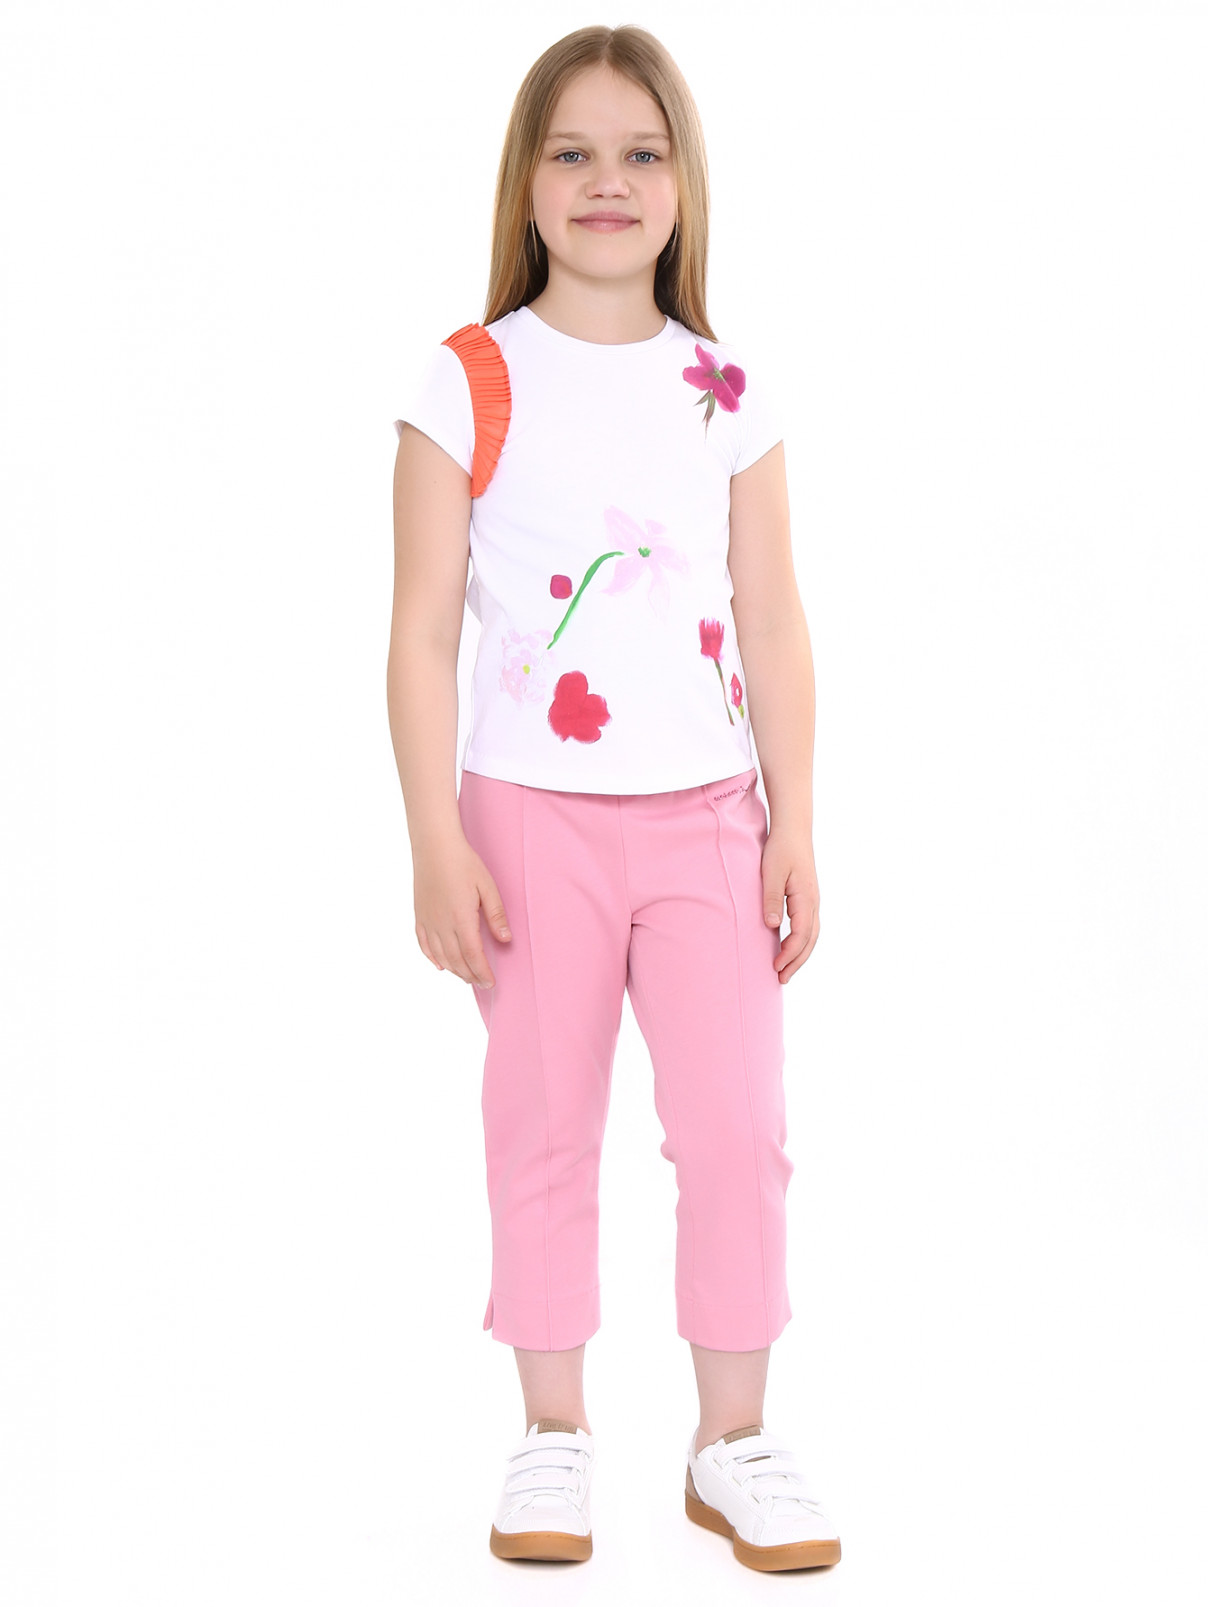 Прямые брюки из хлопка на резинке MiMiSol  –  Модель Общий вид  – Цвет:  Розовый